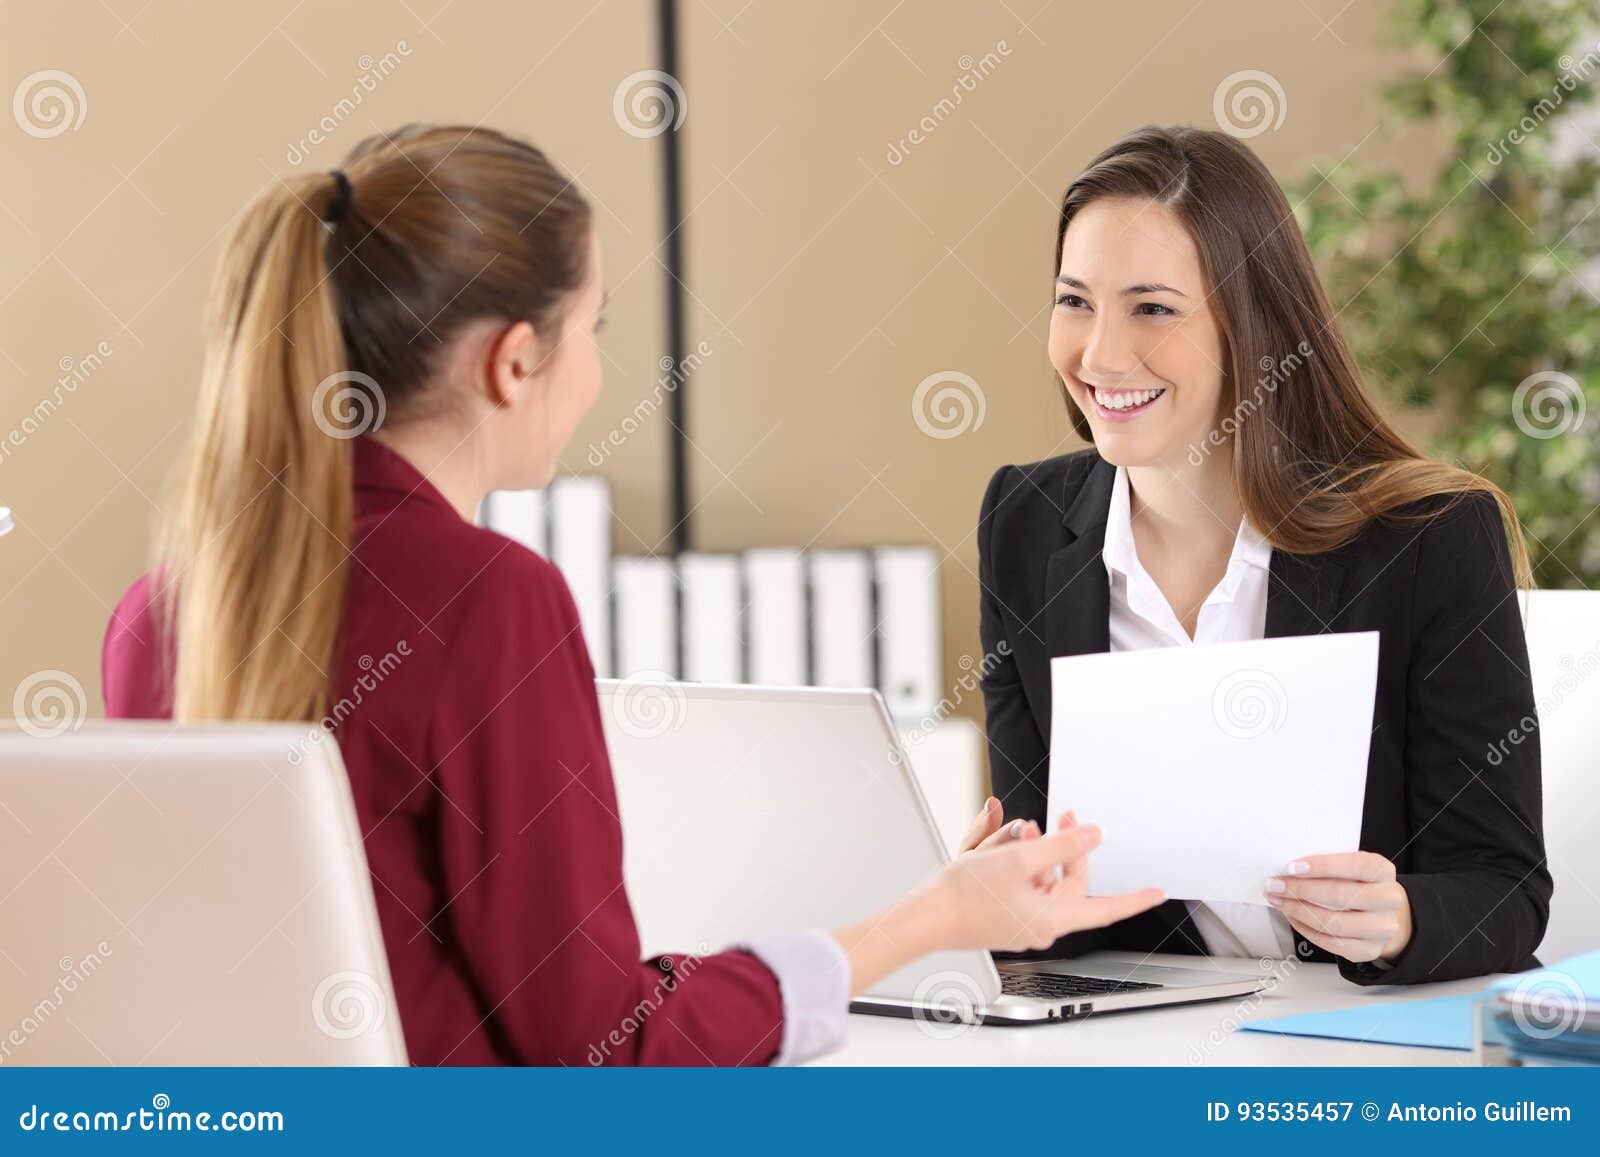 boss attending in a job interview